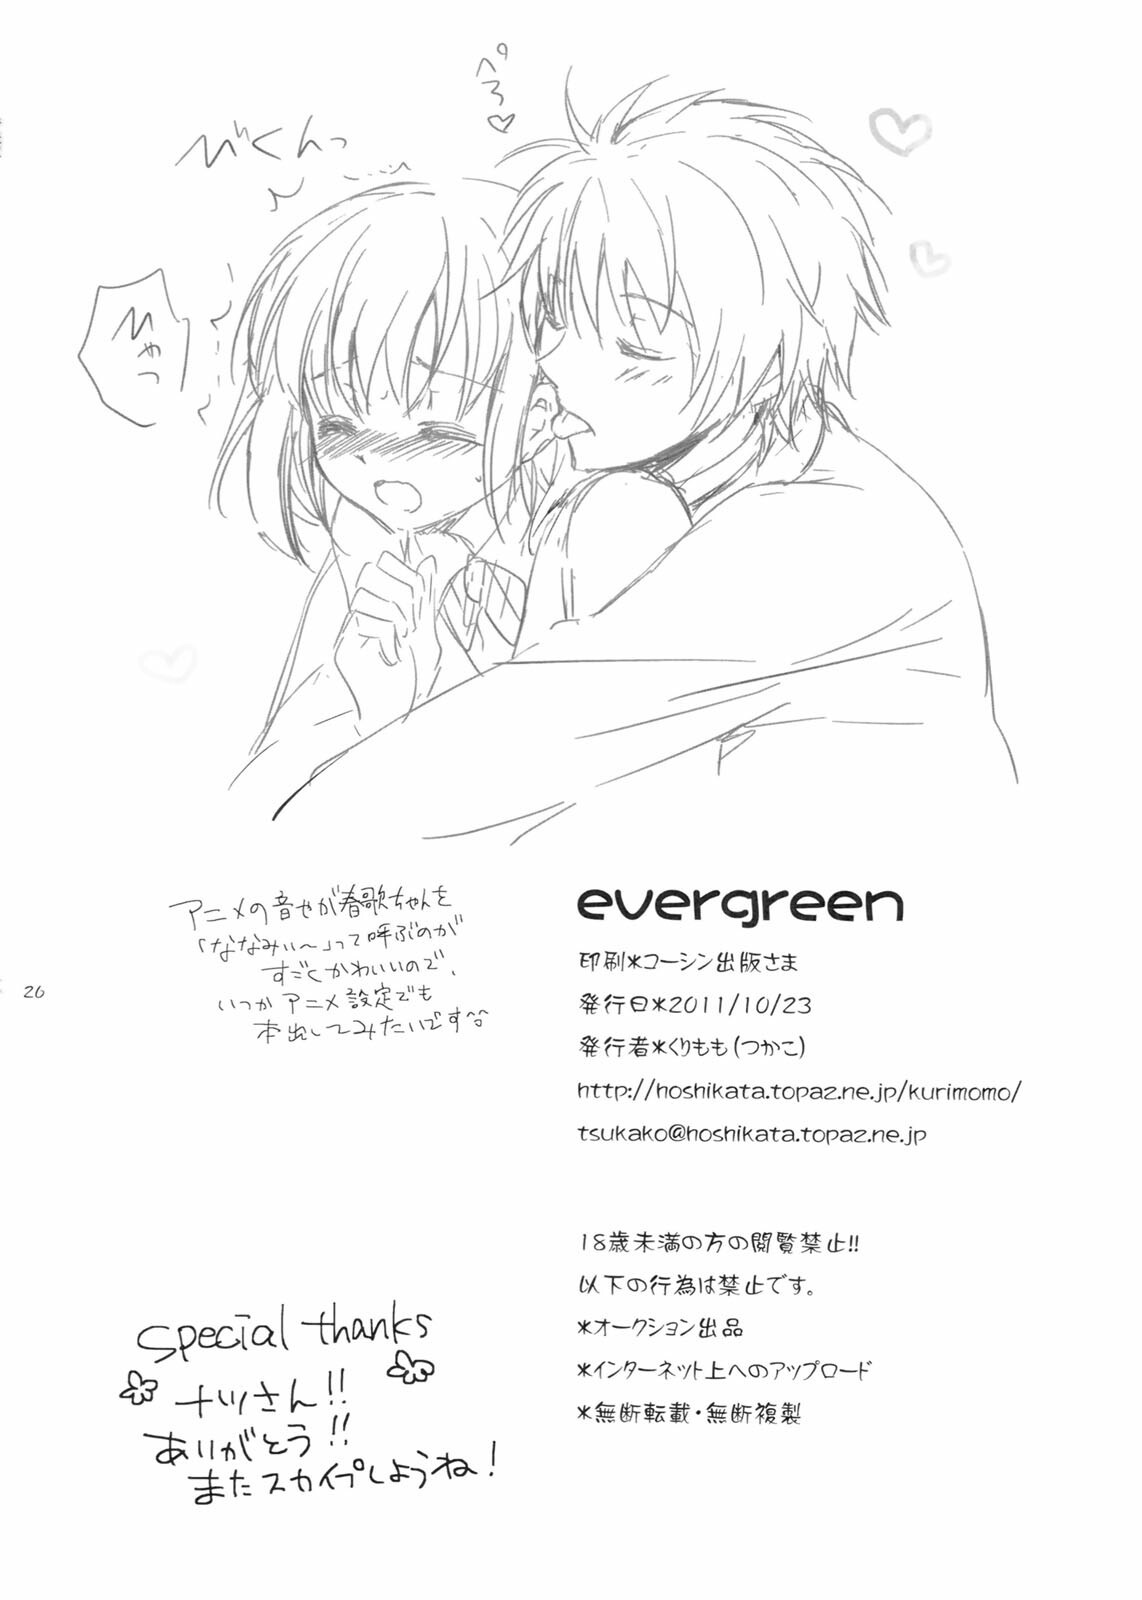 (SC53) [Kurimomo (Tsukako)] evergreen + Omake (Uta no Prince-sama) page 25 full